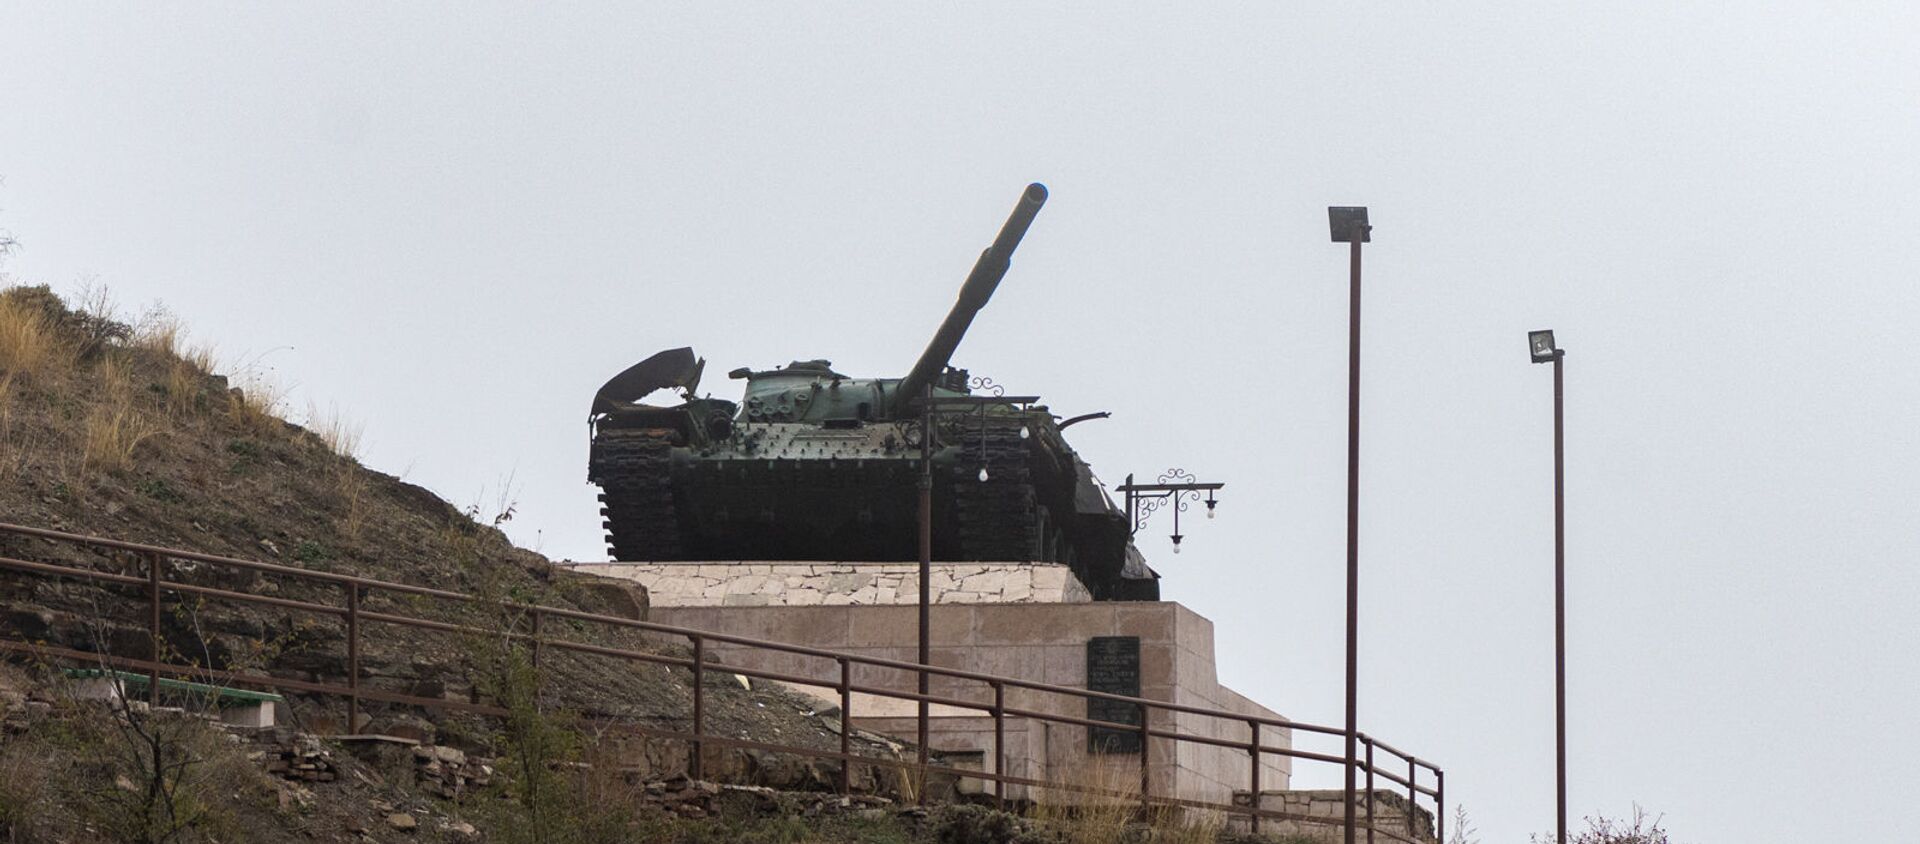 Танк Տ-72, памятник, ознаменующий победу в Шуши, Нагорный Карабах - Sputnik Արմենիա, 1920, 18.08.2021